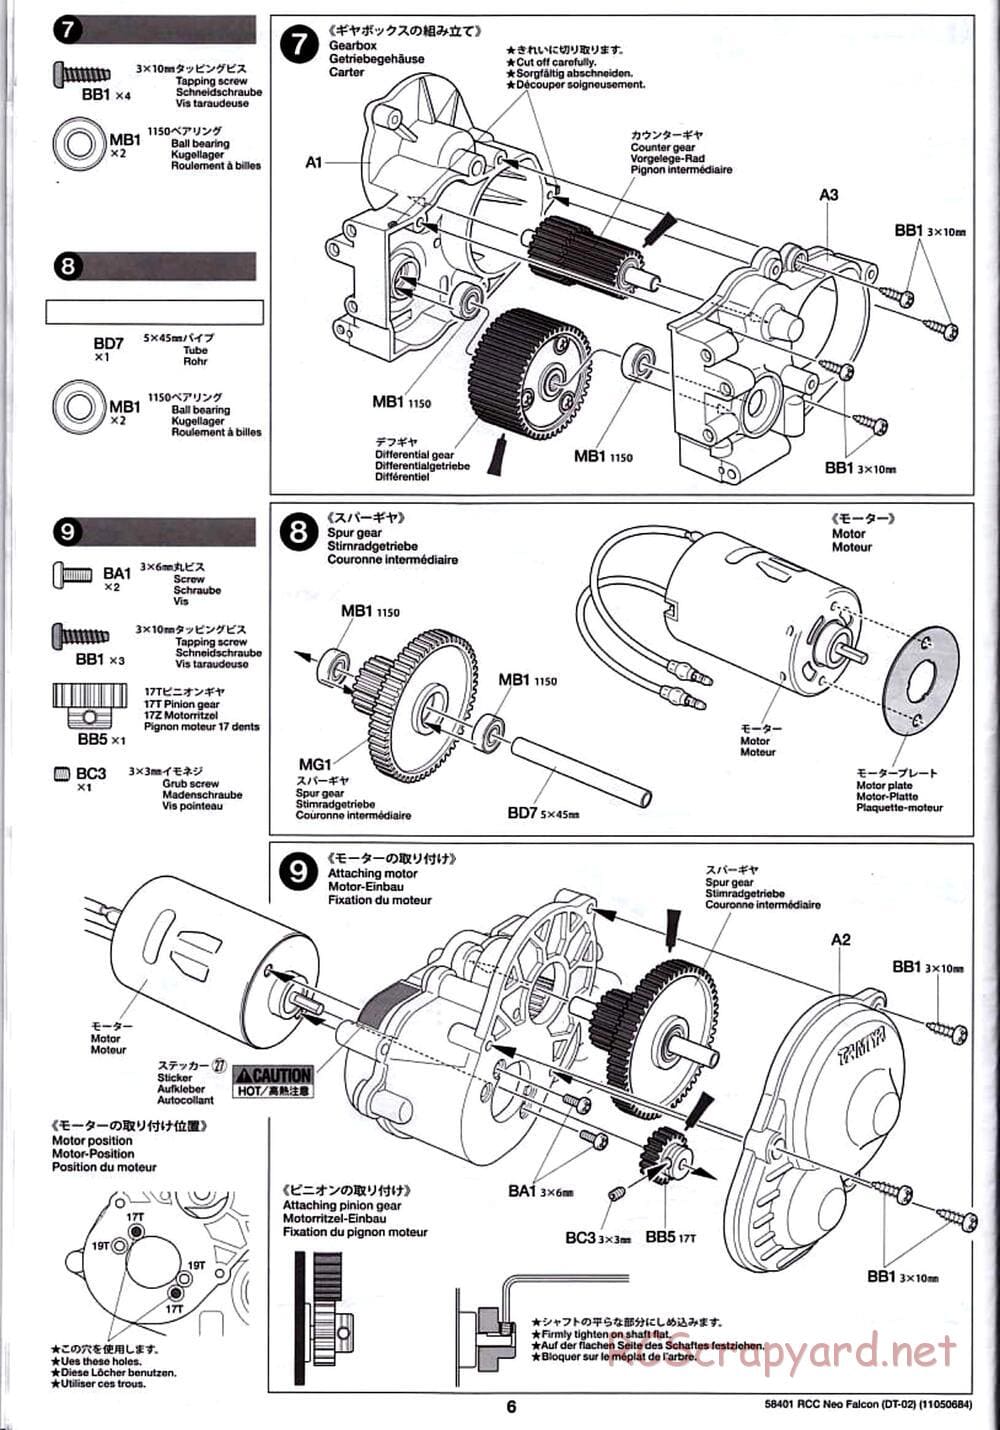 Tamiya - Neo Falcon Chassis - Manual - Page 6